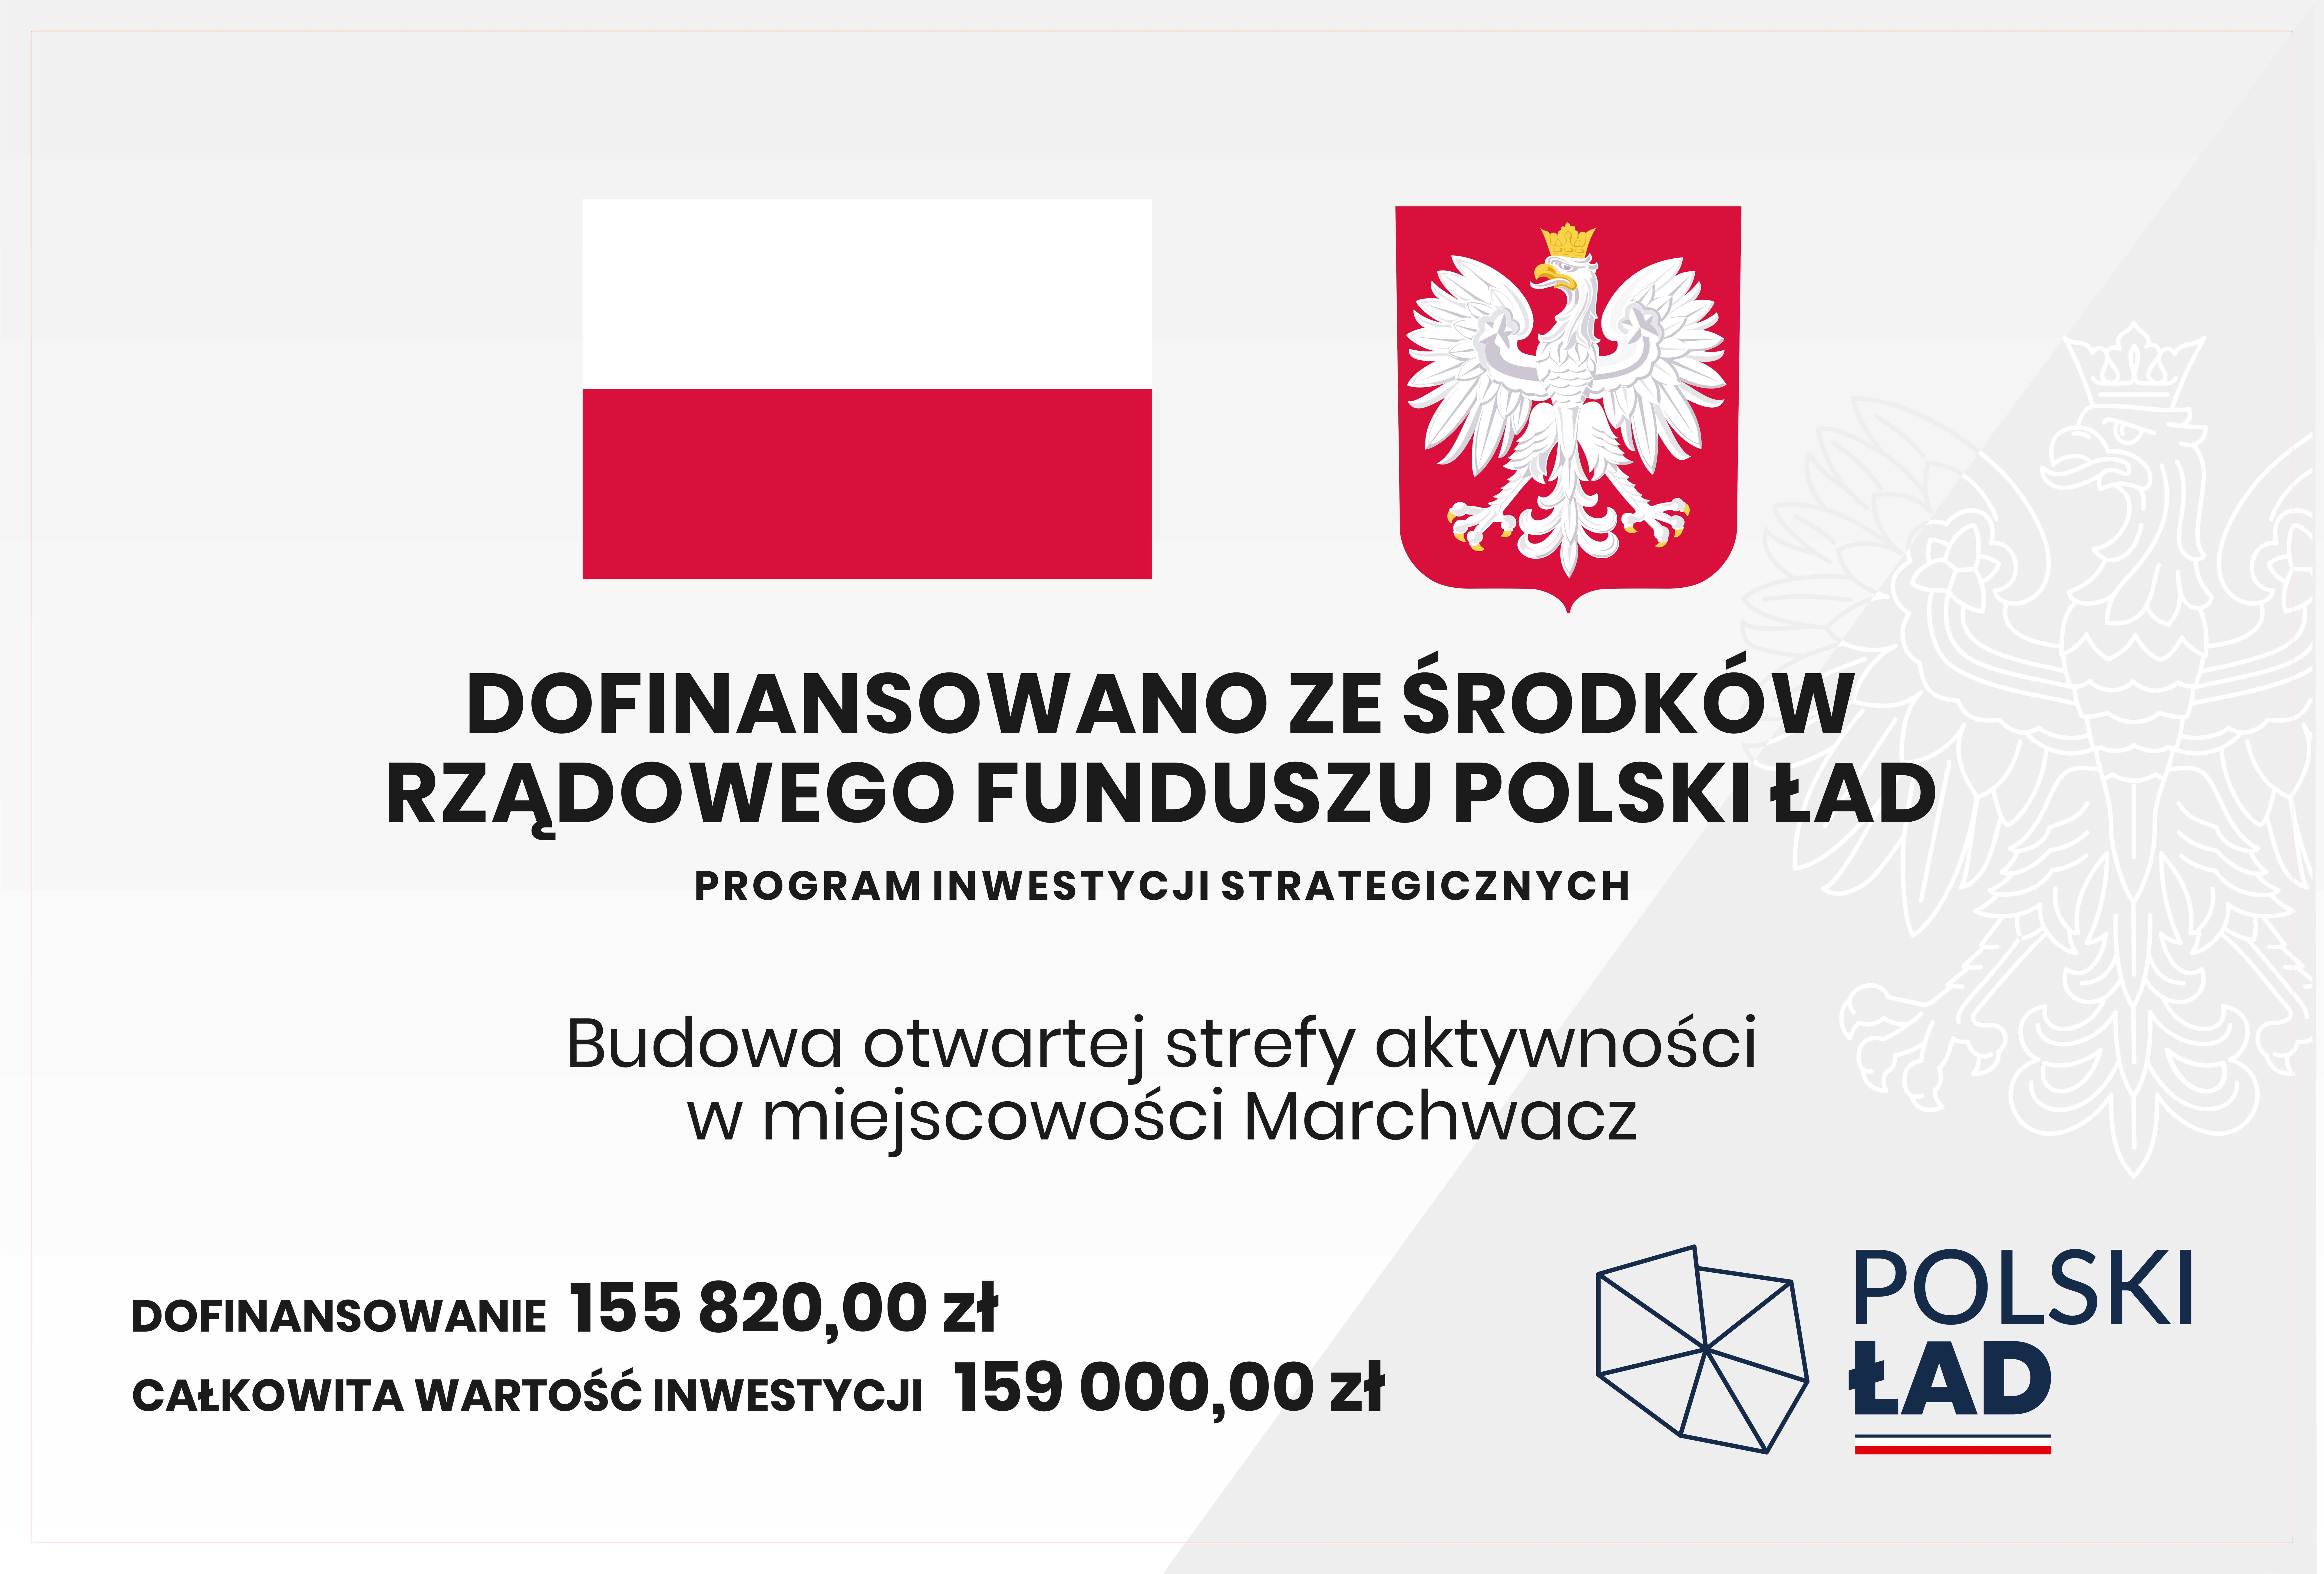 tablica unijna polski lad budowa otwartej strefy aktywnosci marchwacz 180x120CM page 00011